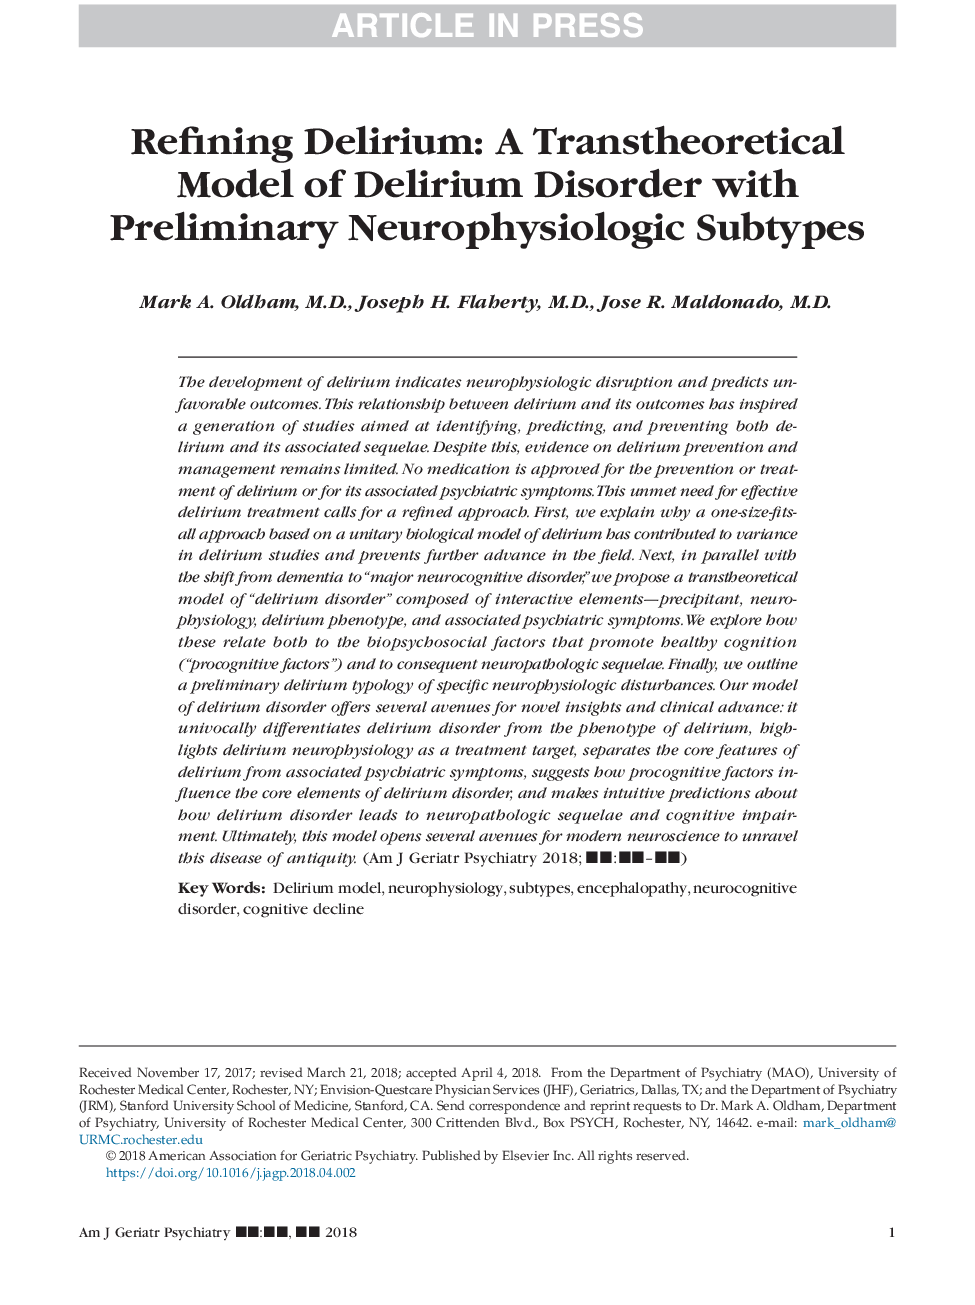 پالایش دلیریم: یک مدل ترانسپرتئینی از اختلال دلیری با زیرمجموعه های اولیه نوروفیزیولوژیک